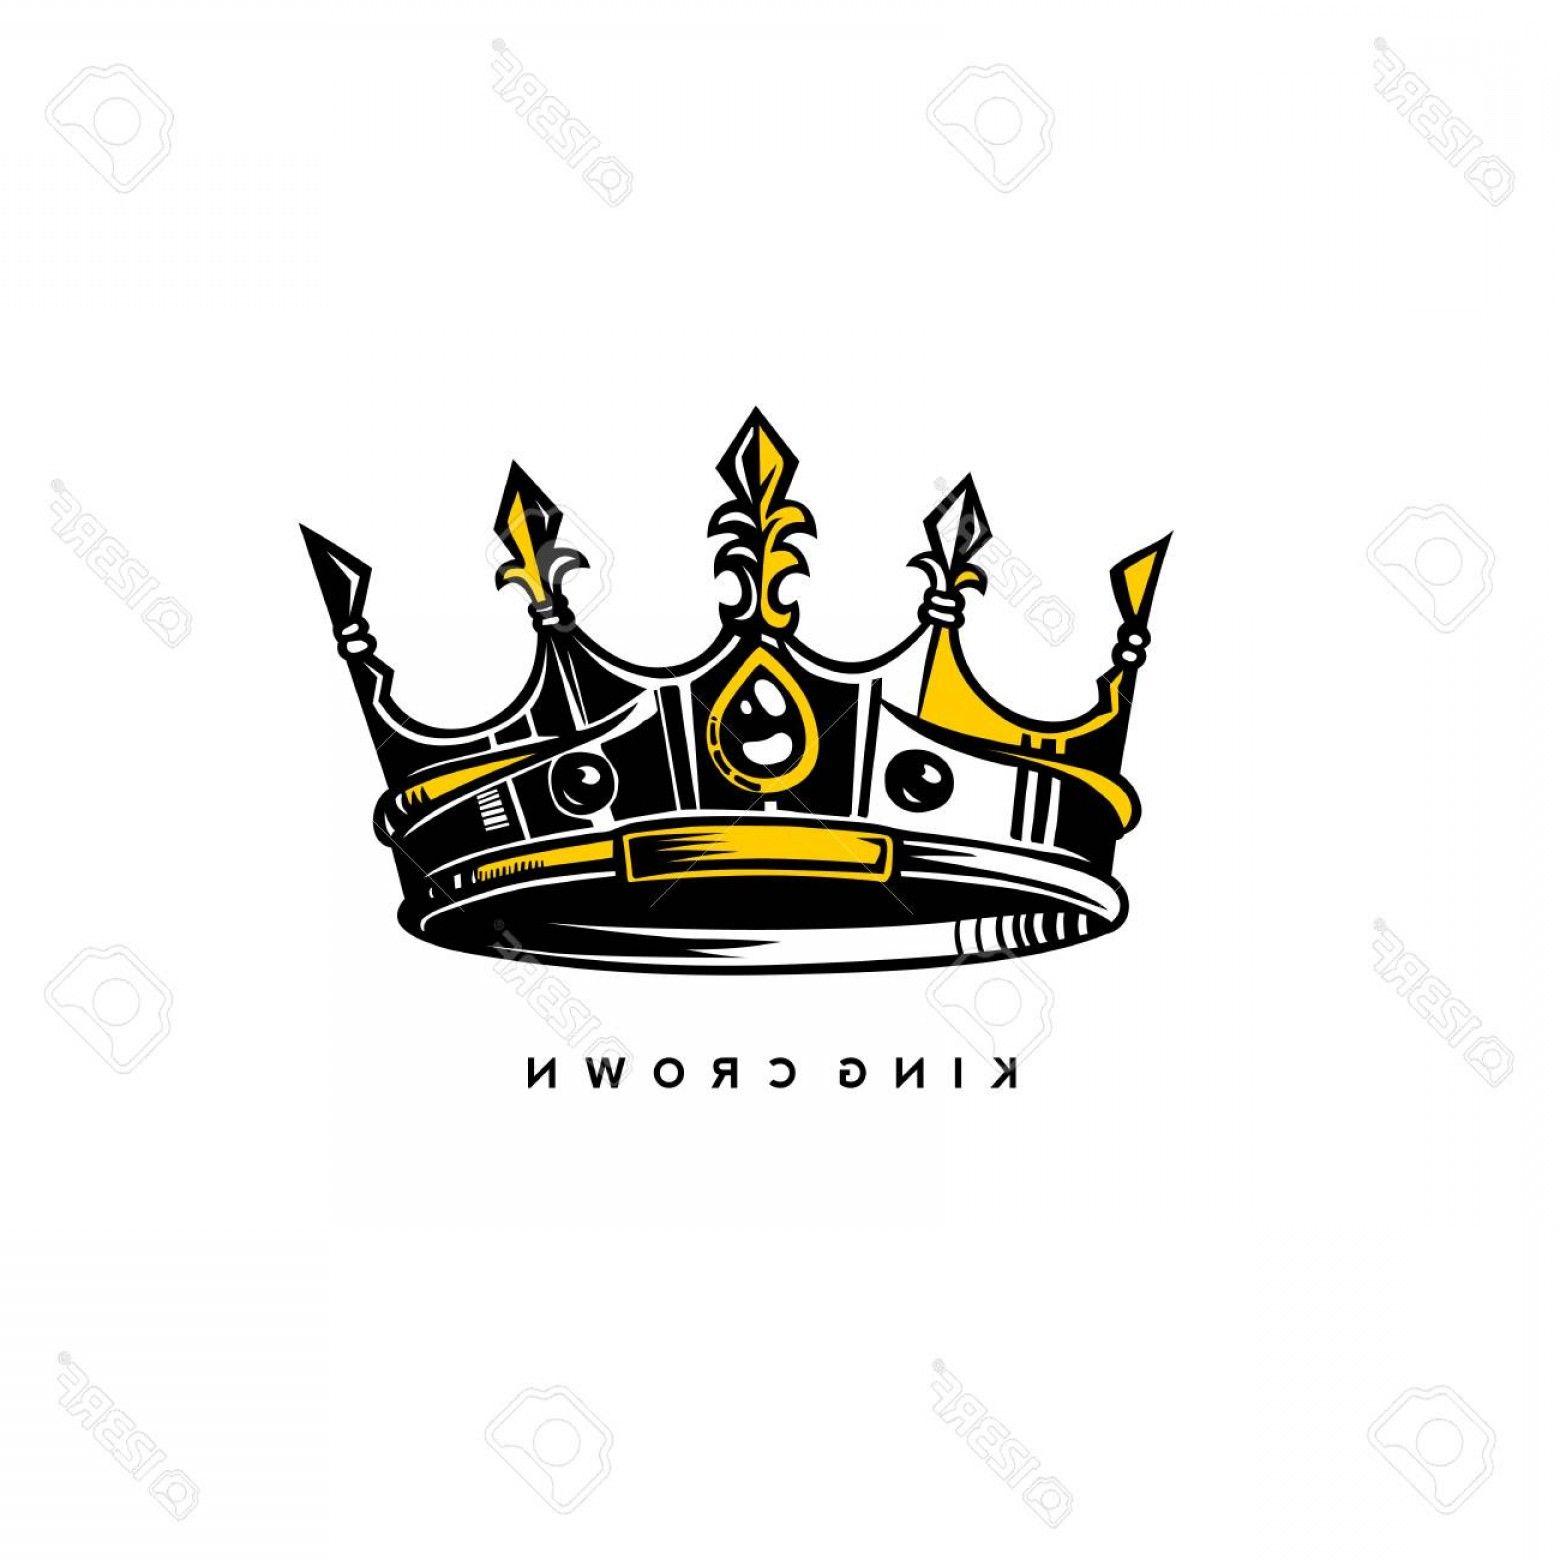 Gold King Crown Logo - Photostock Vector Silver And Gold King Crown Logo On White